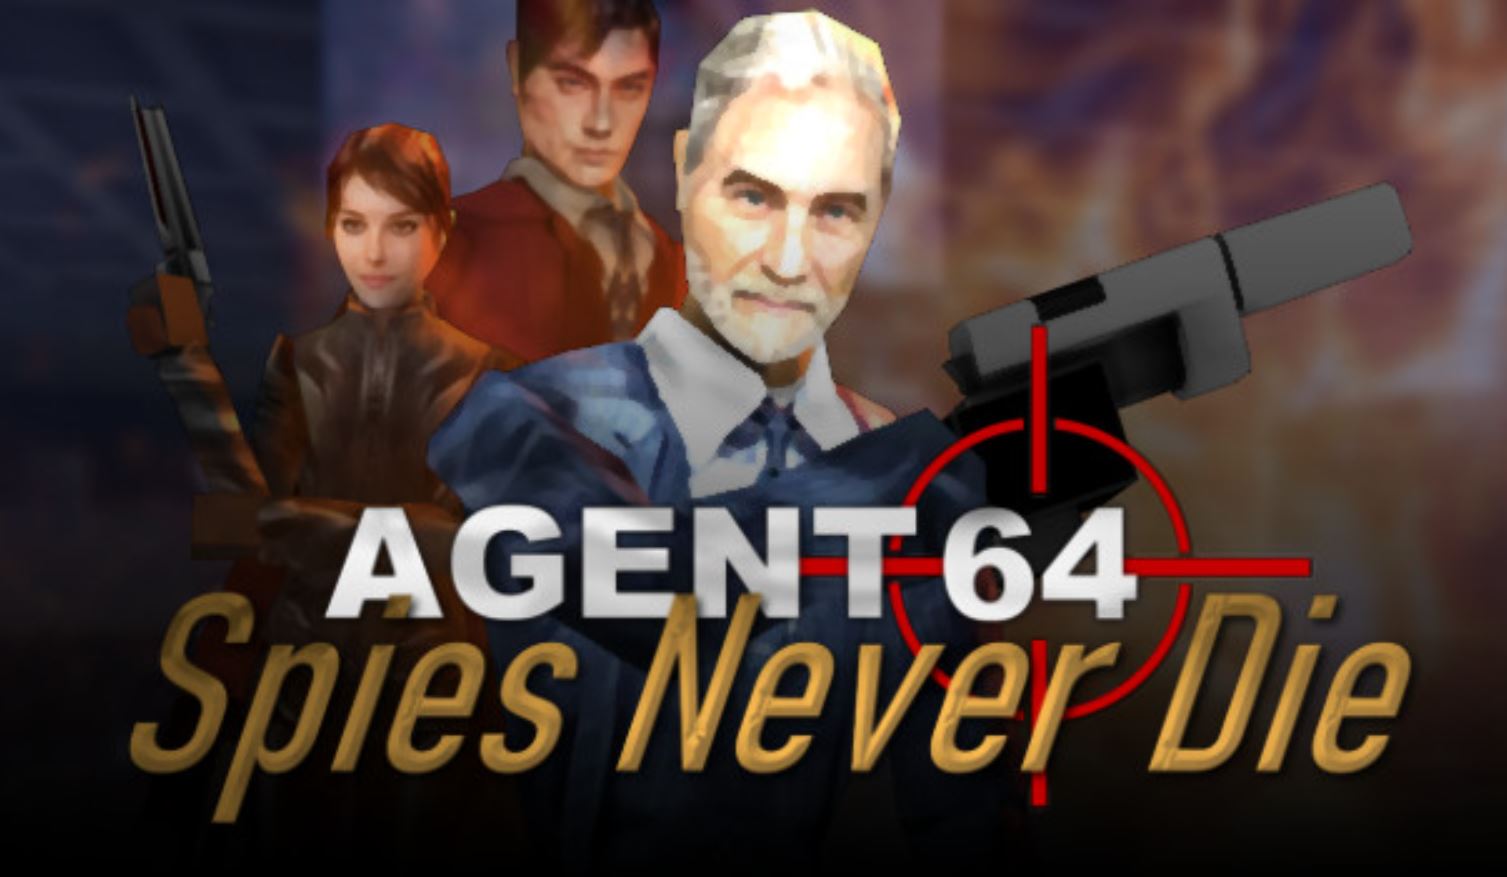 Si extrañan GoldenEye 007, Agent 64: Spies Never Die es el juego que planea llenar ese vacío en sus corazones y ya tiene una demo disponible.